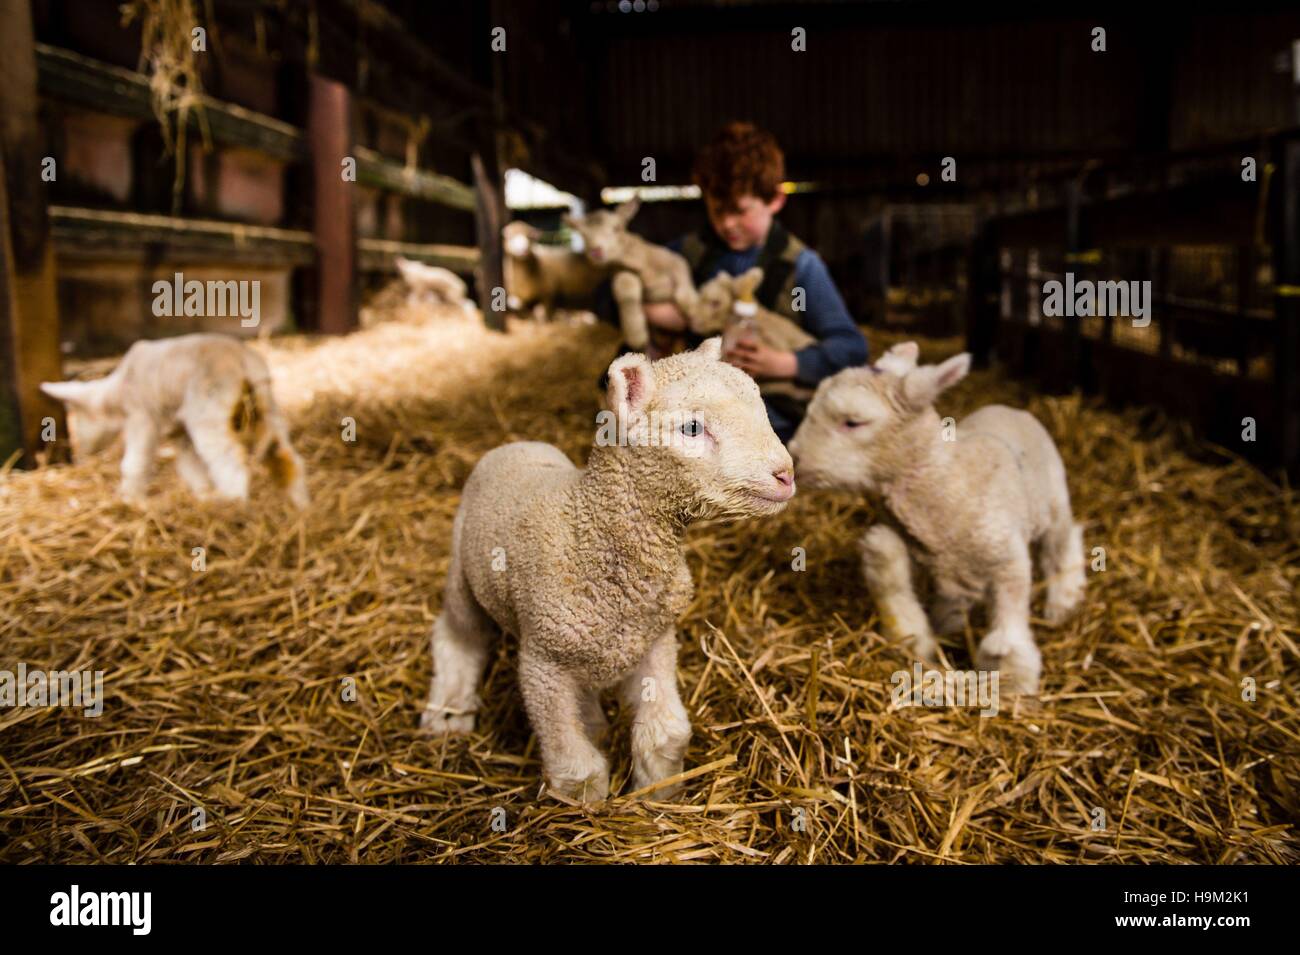 Los corderos del huérfano recién nacido lambing derramada en el Olde House, Capilla ambladura, Cornwall, donde suaves temperaturas permiten una segunda temporada de parición en noviembre y diciembre. Foto de stock